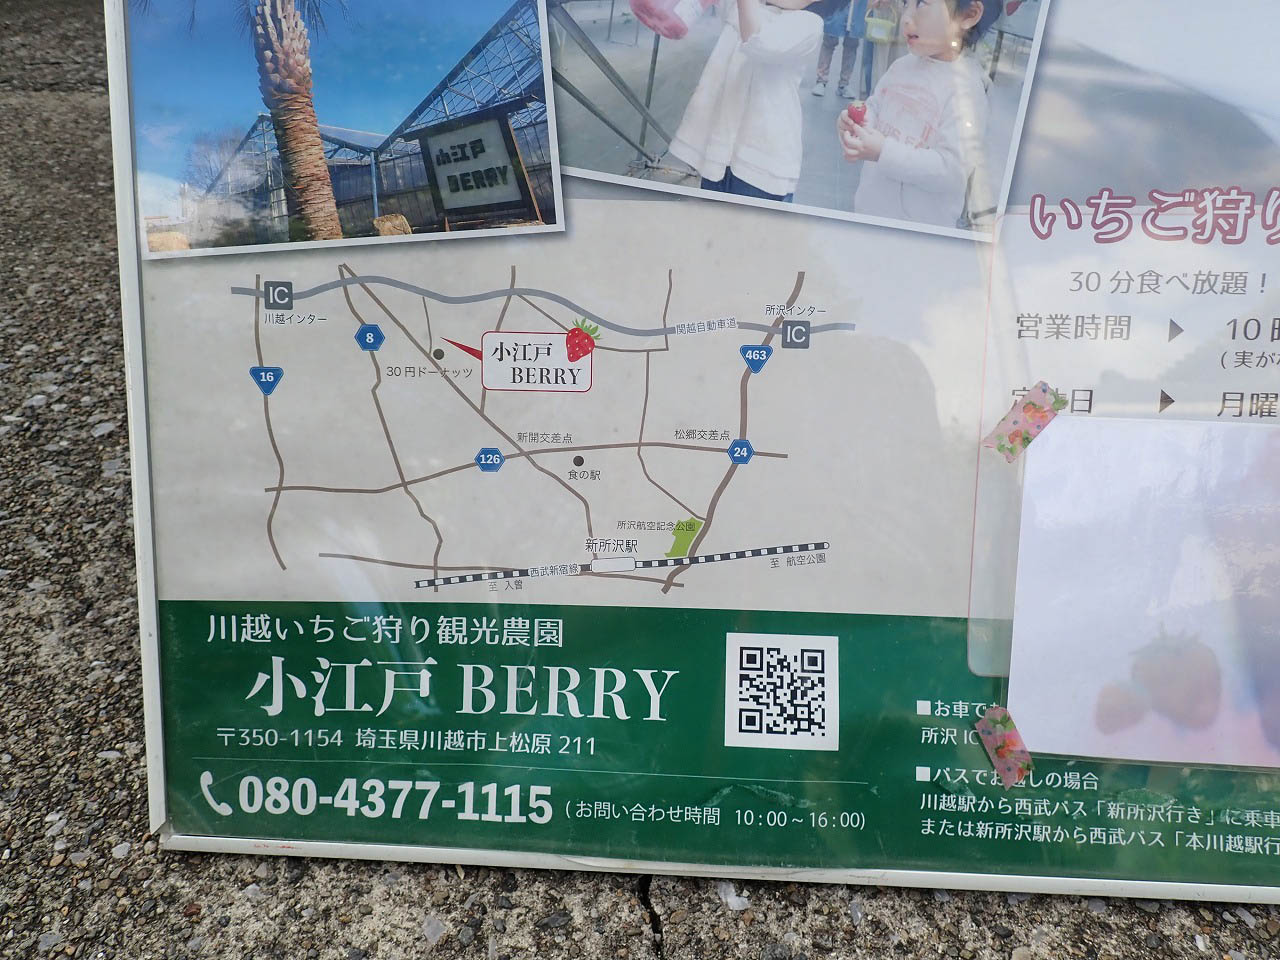 小江戸BERRYがワゴンカーで販売している「苺けずり」